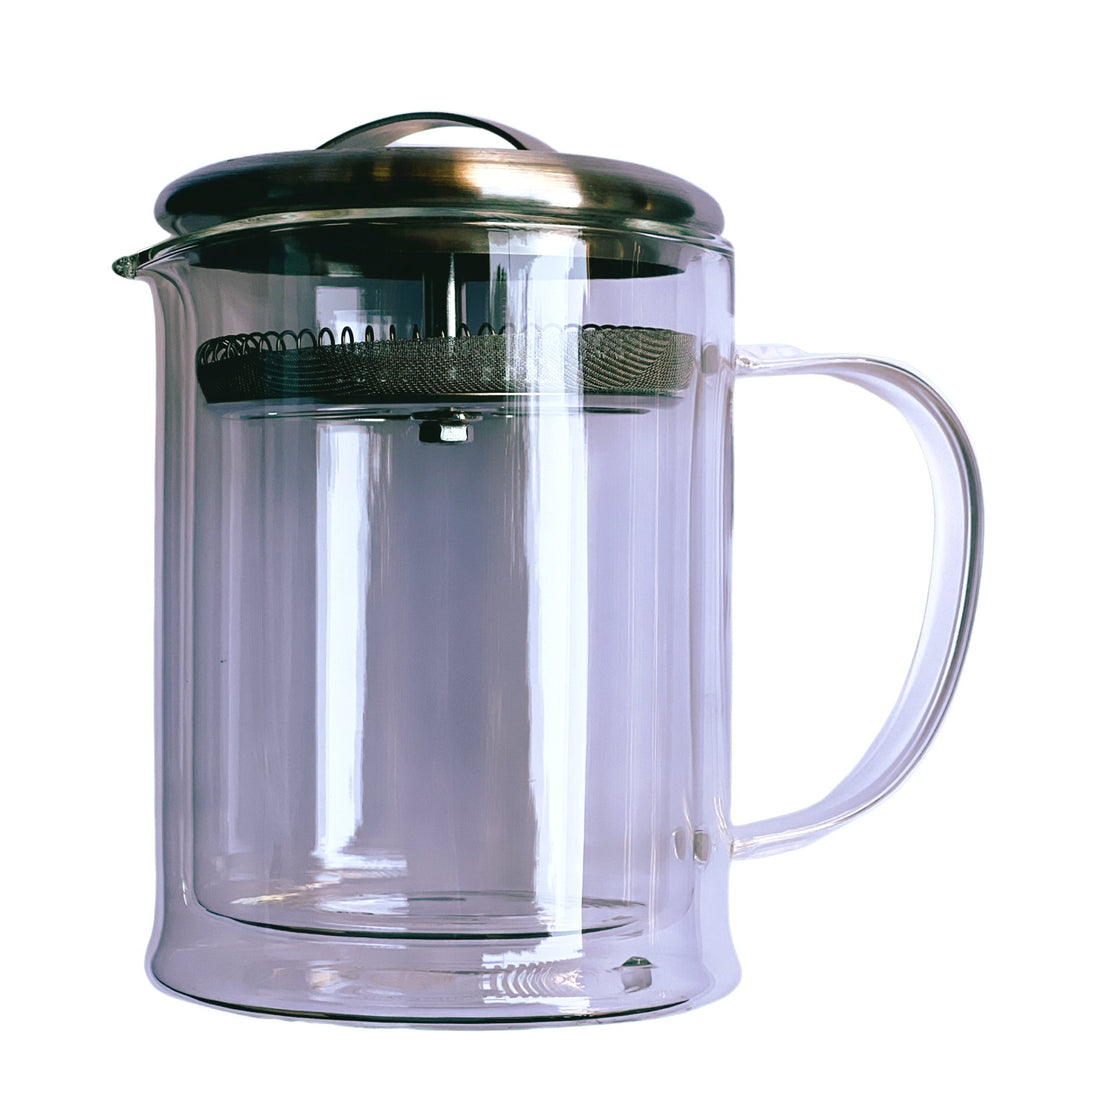 Casaware Glass Teapot - Loose Leaf Tea Market